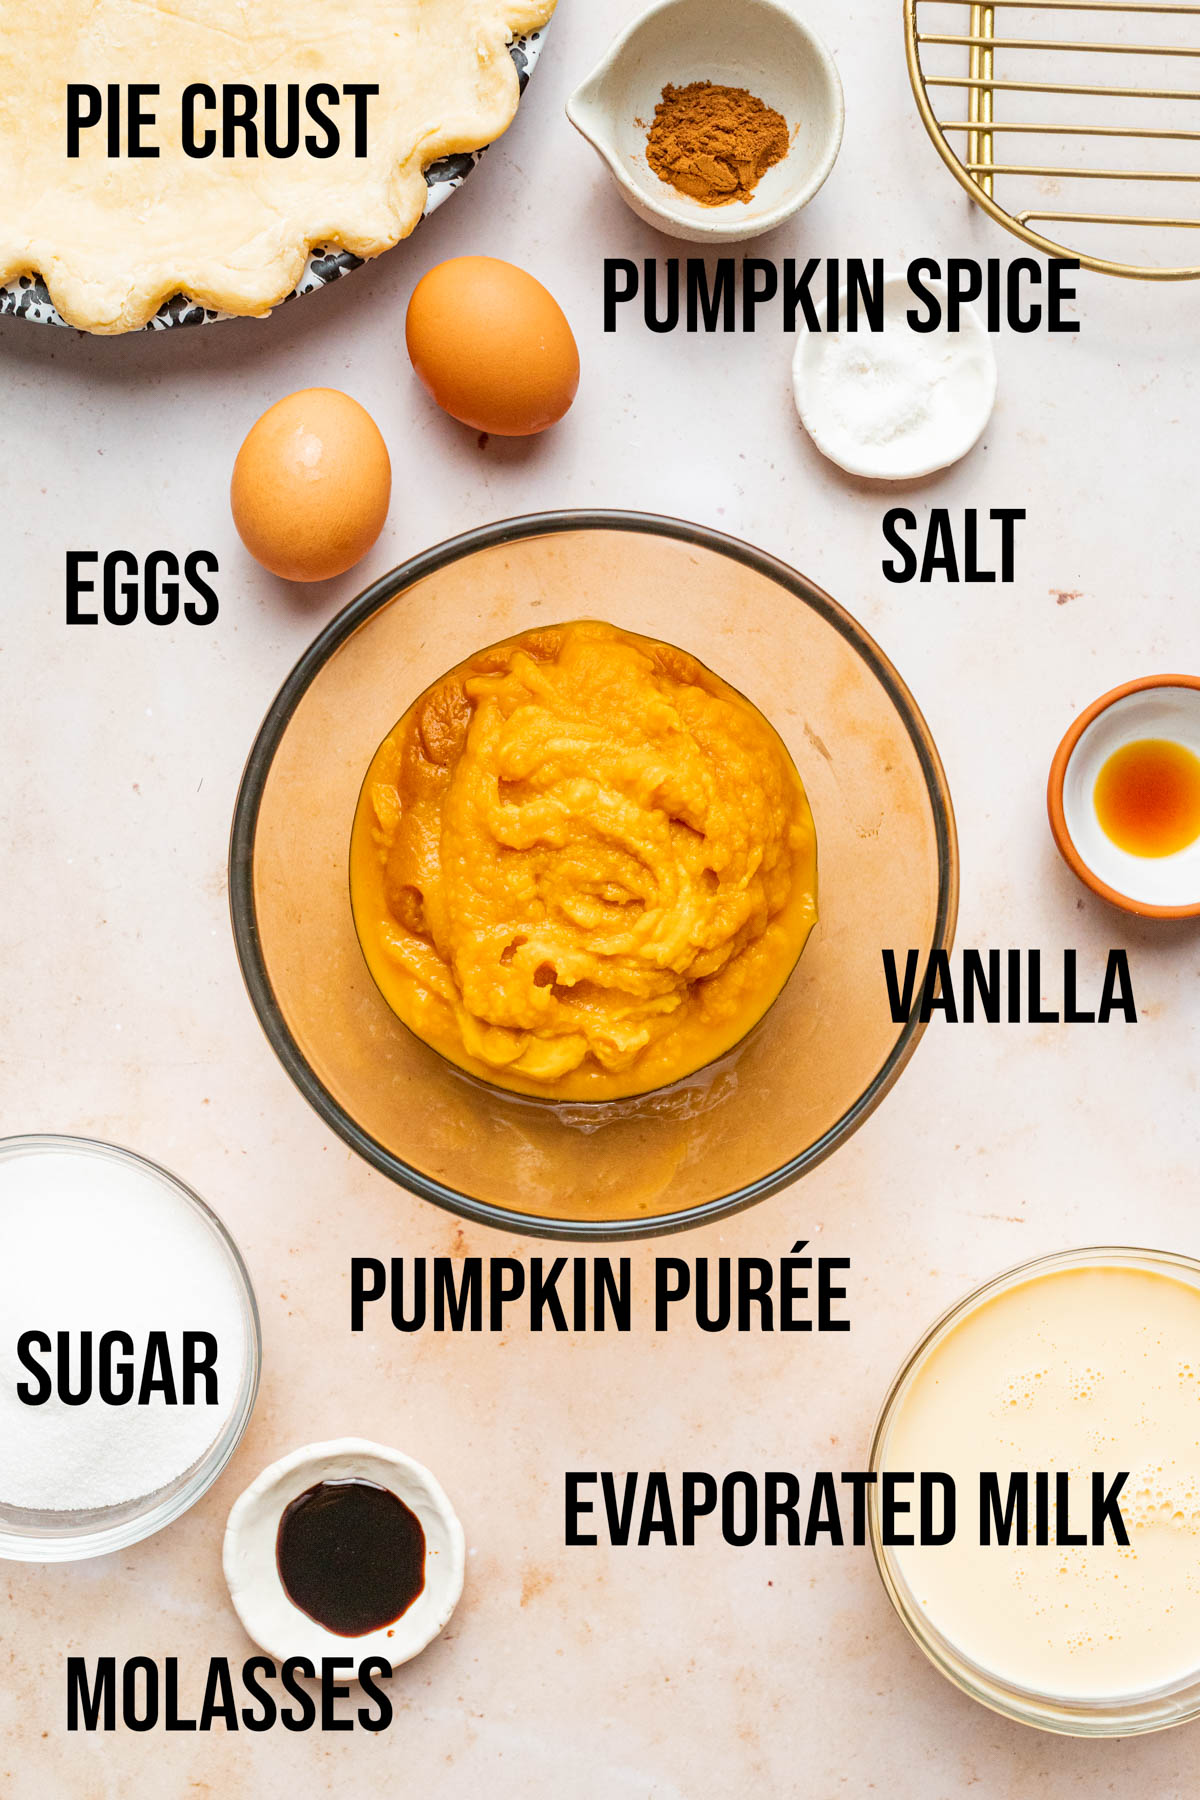 Ingredients to make pumpkin custard pie.